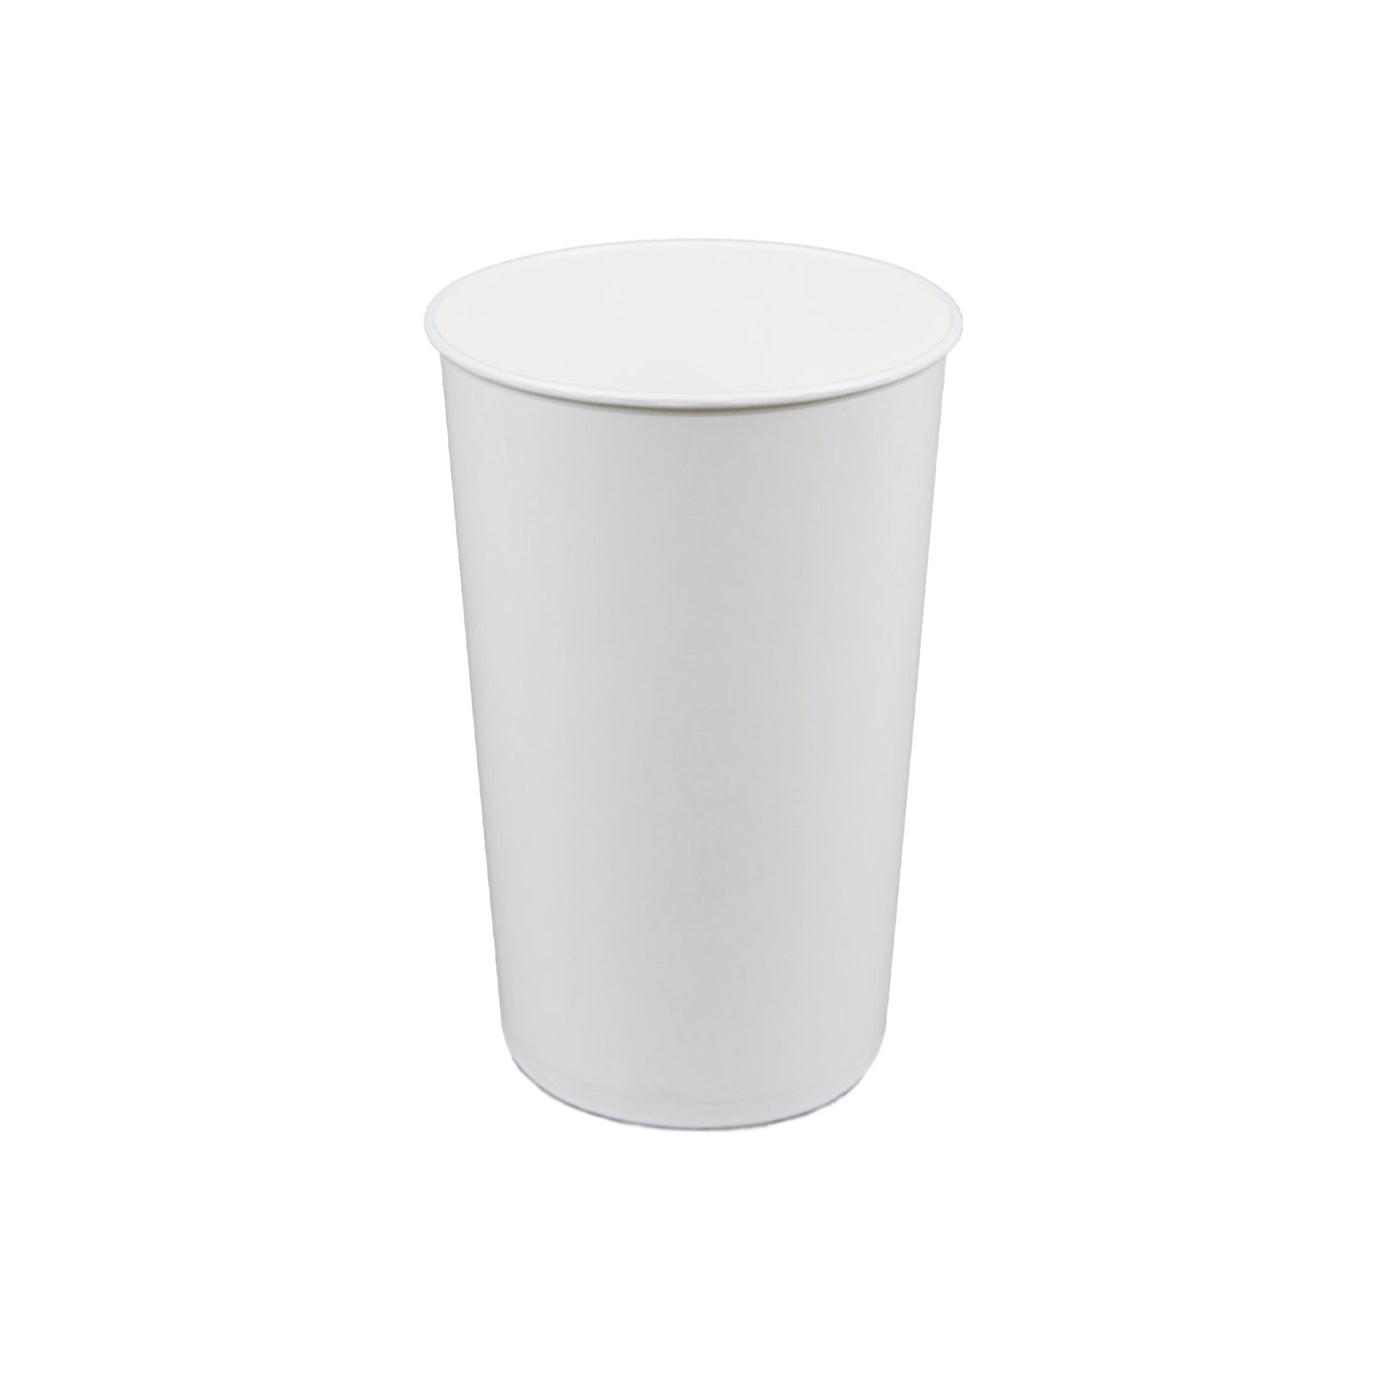 https://shop.gmpopcorn.com/cdn/shop/products/5326-16-oz-plain-white-drink-cup_1400x.jpg?v=1655925709